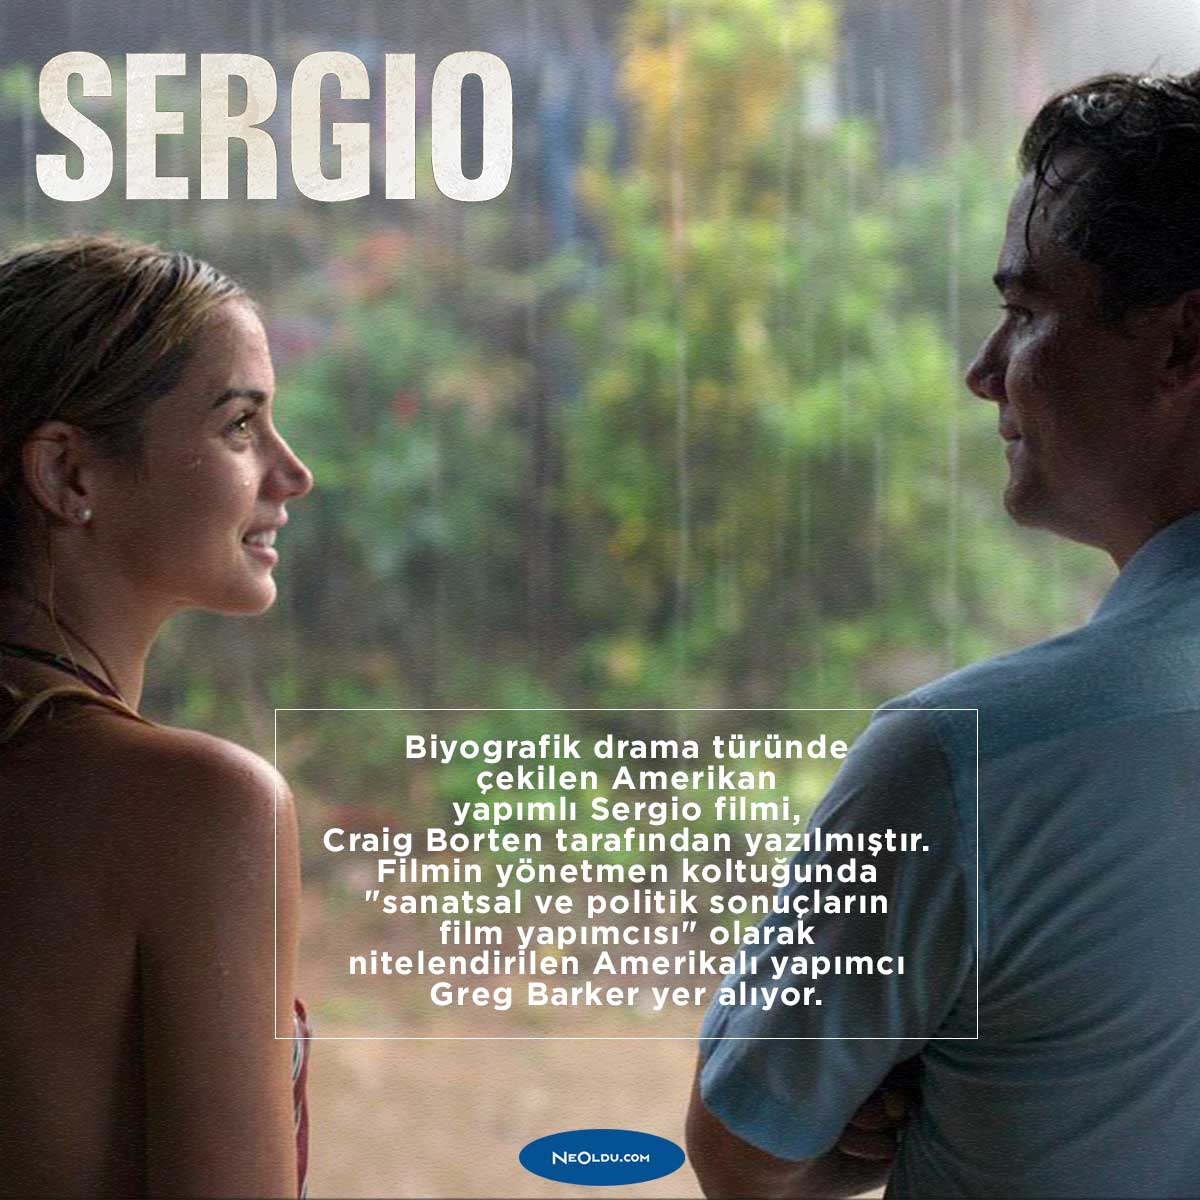 Sergio Film İncelemesi